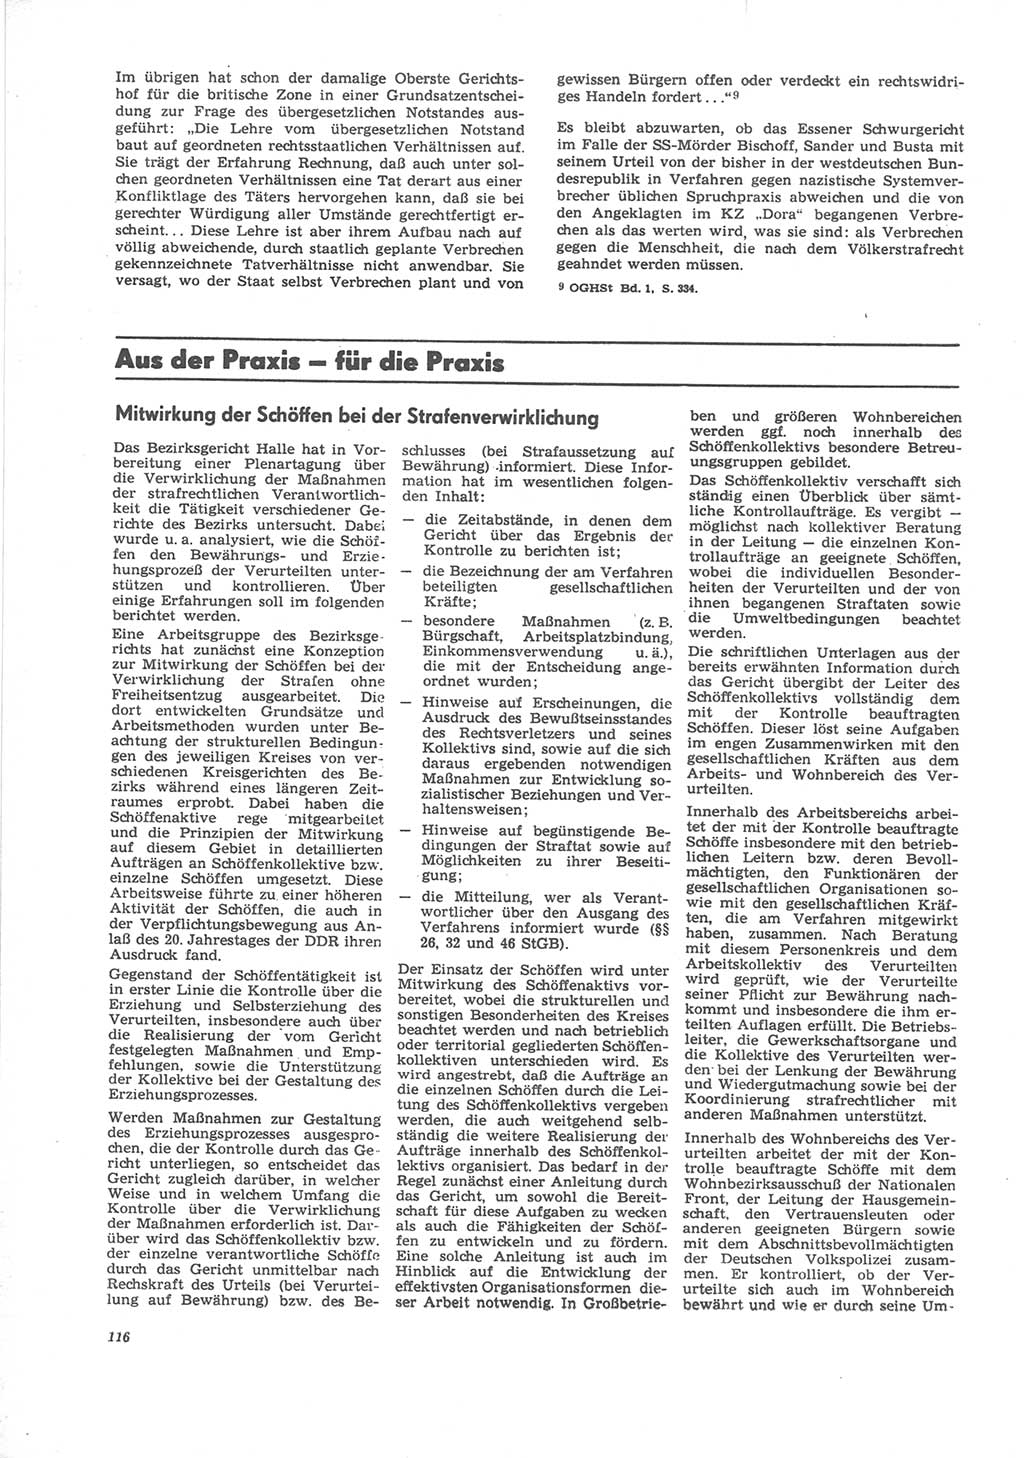 Neue Justiz (NJ), Zeitschrift für Recht und Rechtswissenschaft [Deutsche Demokratische Republik (DDR)], 24. Jahrgang 1970, Seite 116 (NJ DDR 1970, S. 116)